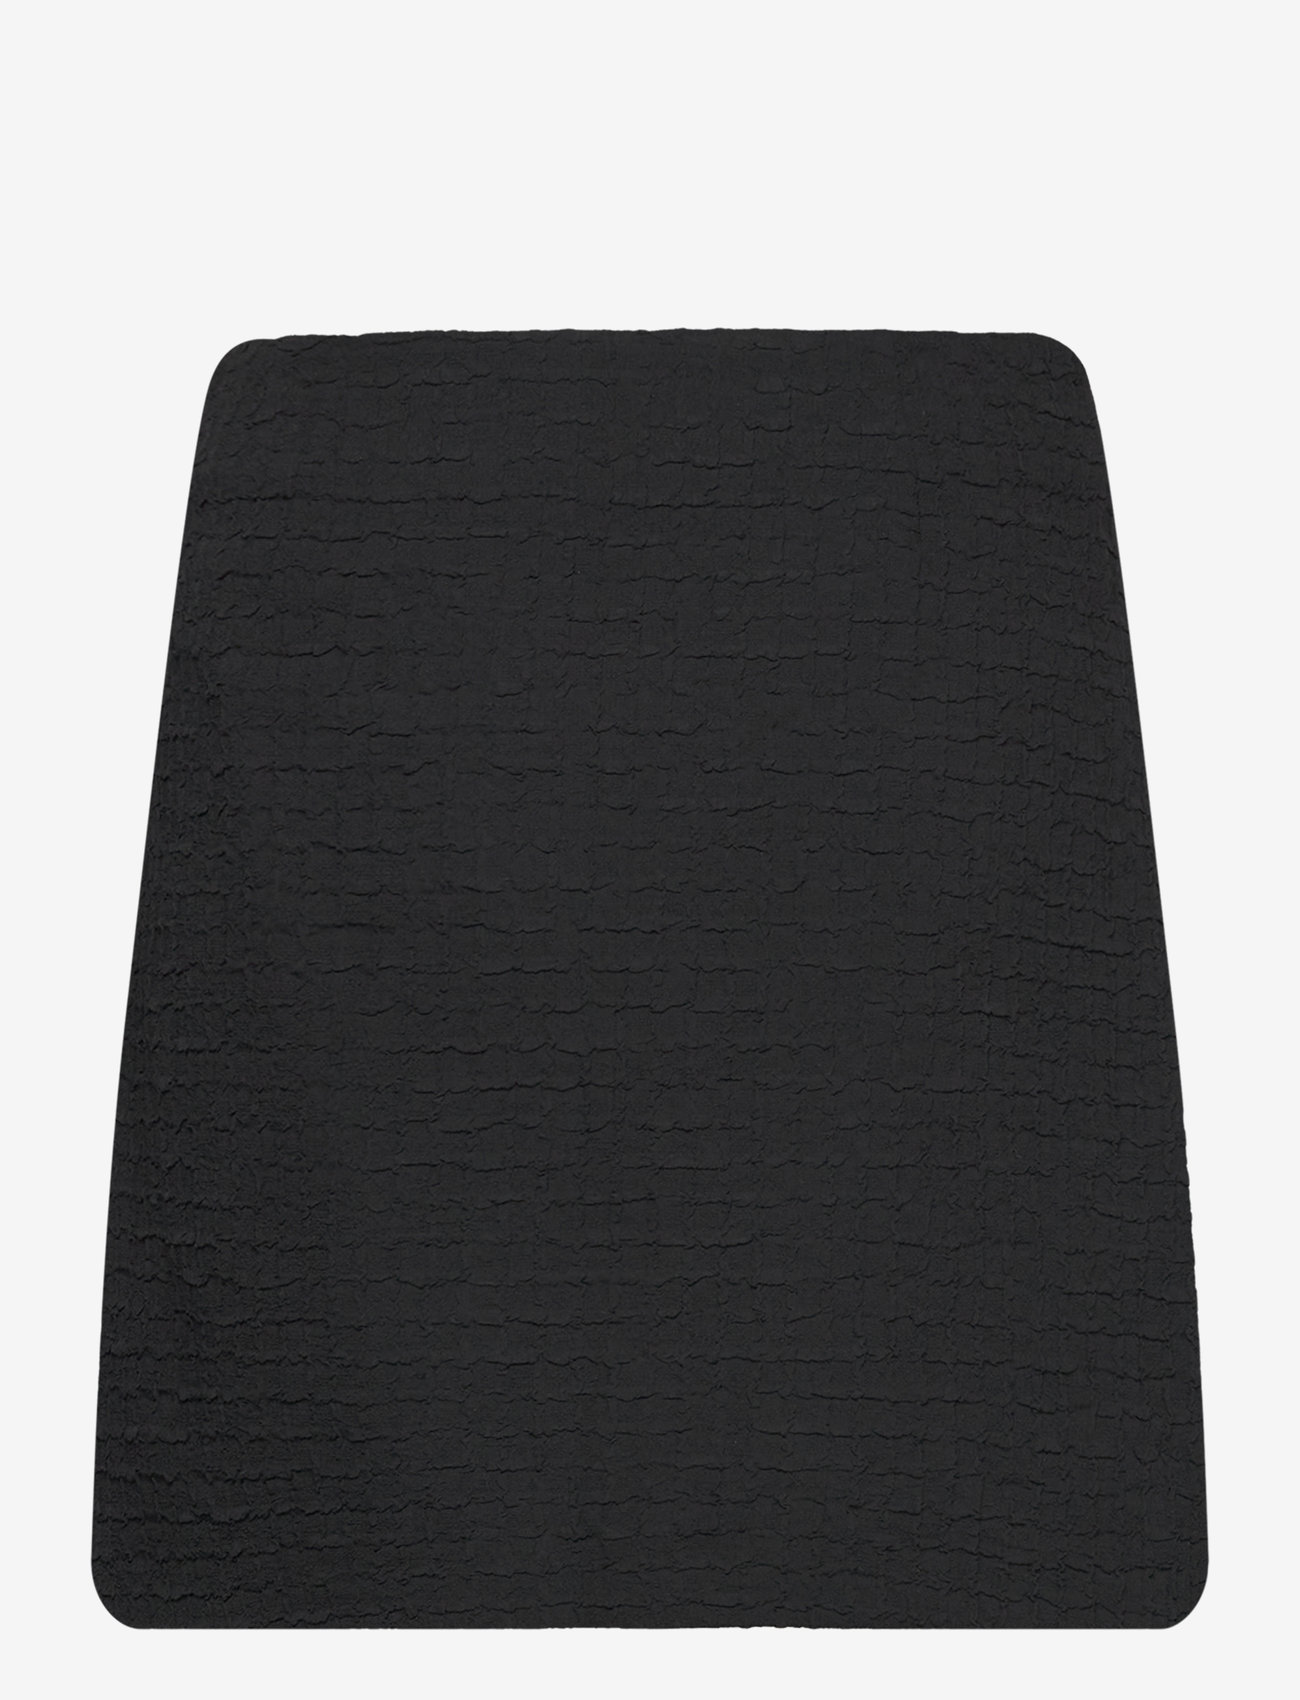 Modström - FaiMD skirt - korte nederdele - black - 1